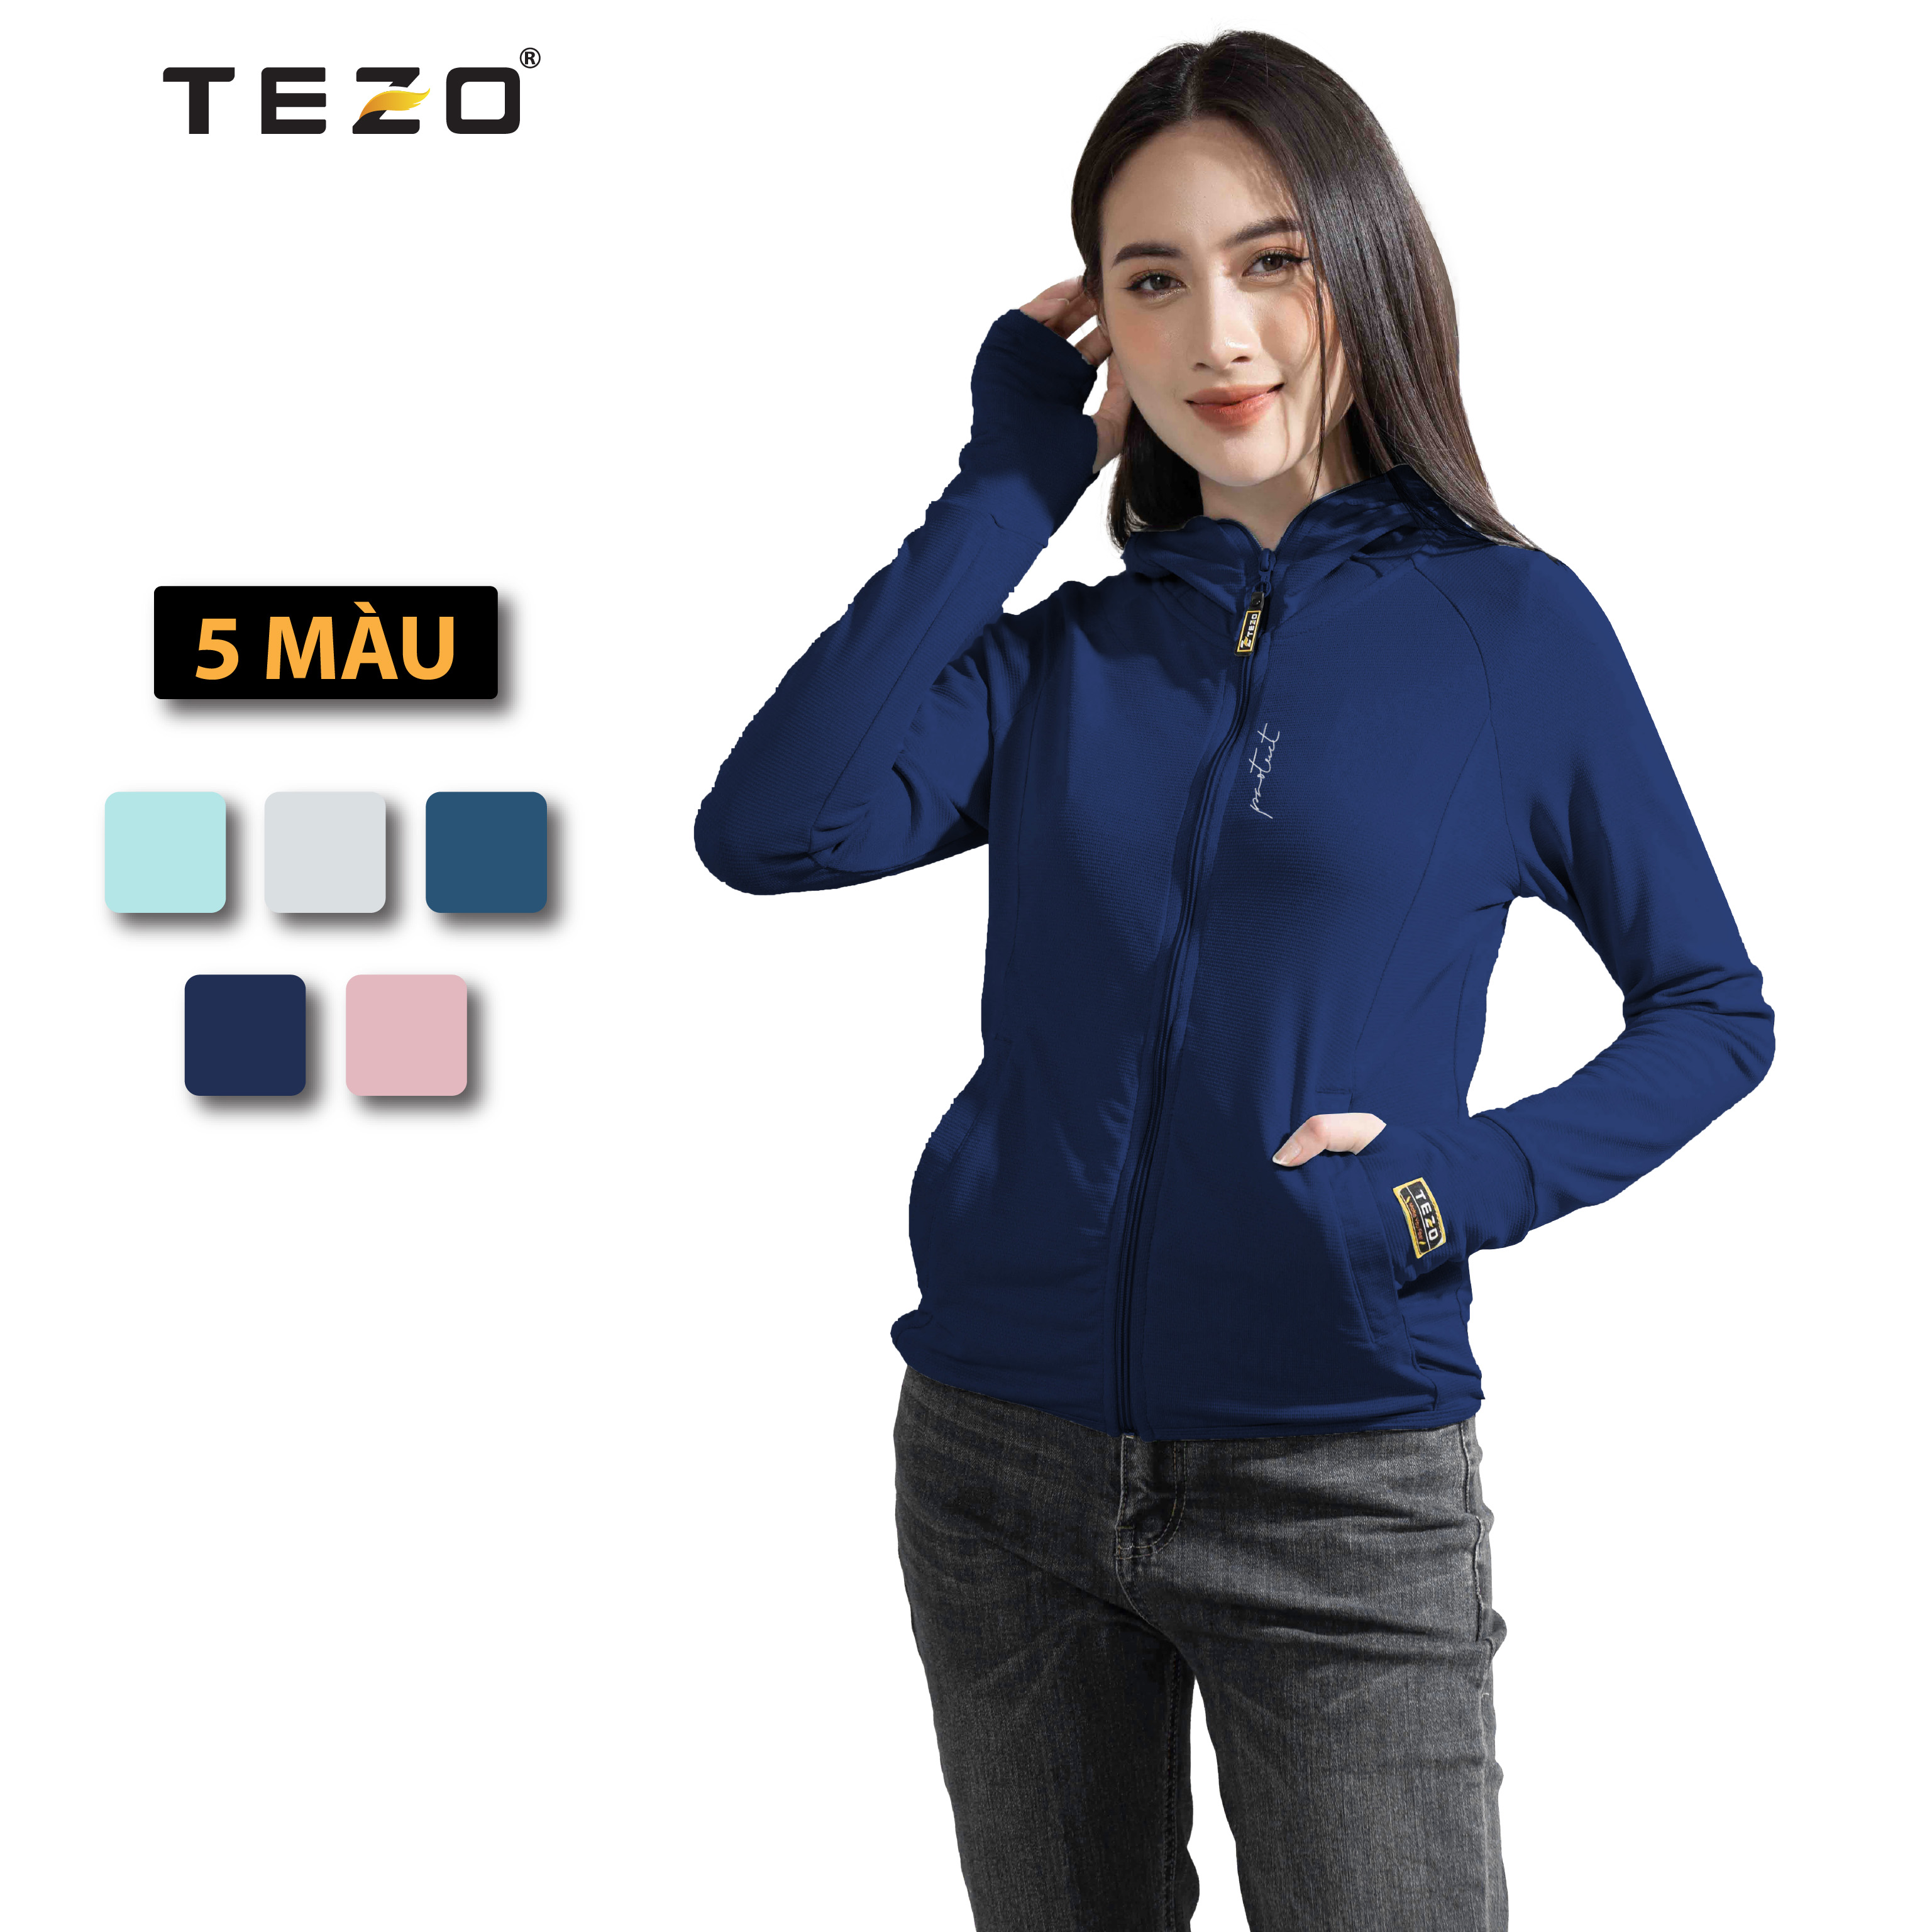 Áo khoác Áo chống nắng nữ cao cấp TEZO 5 màu chất liệu vải PE coolmax thoáng mát thumbnail